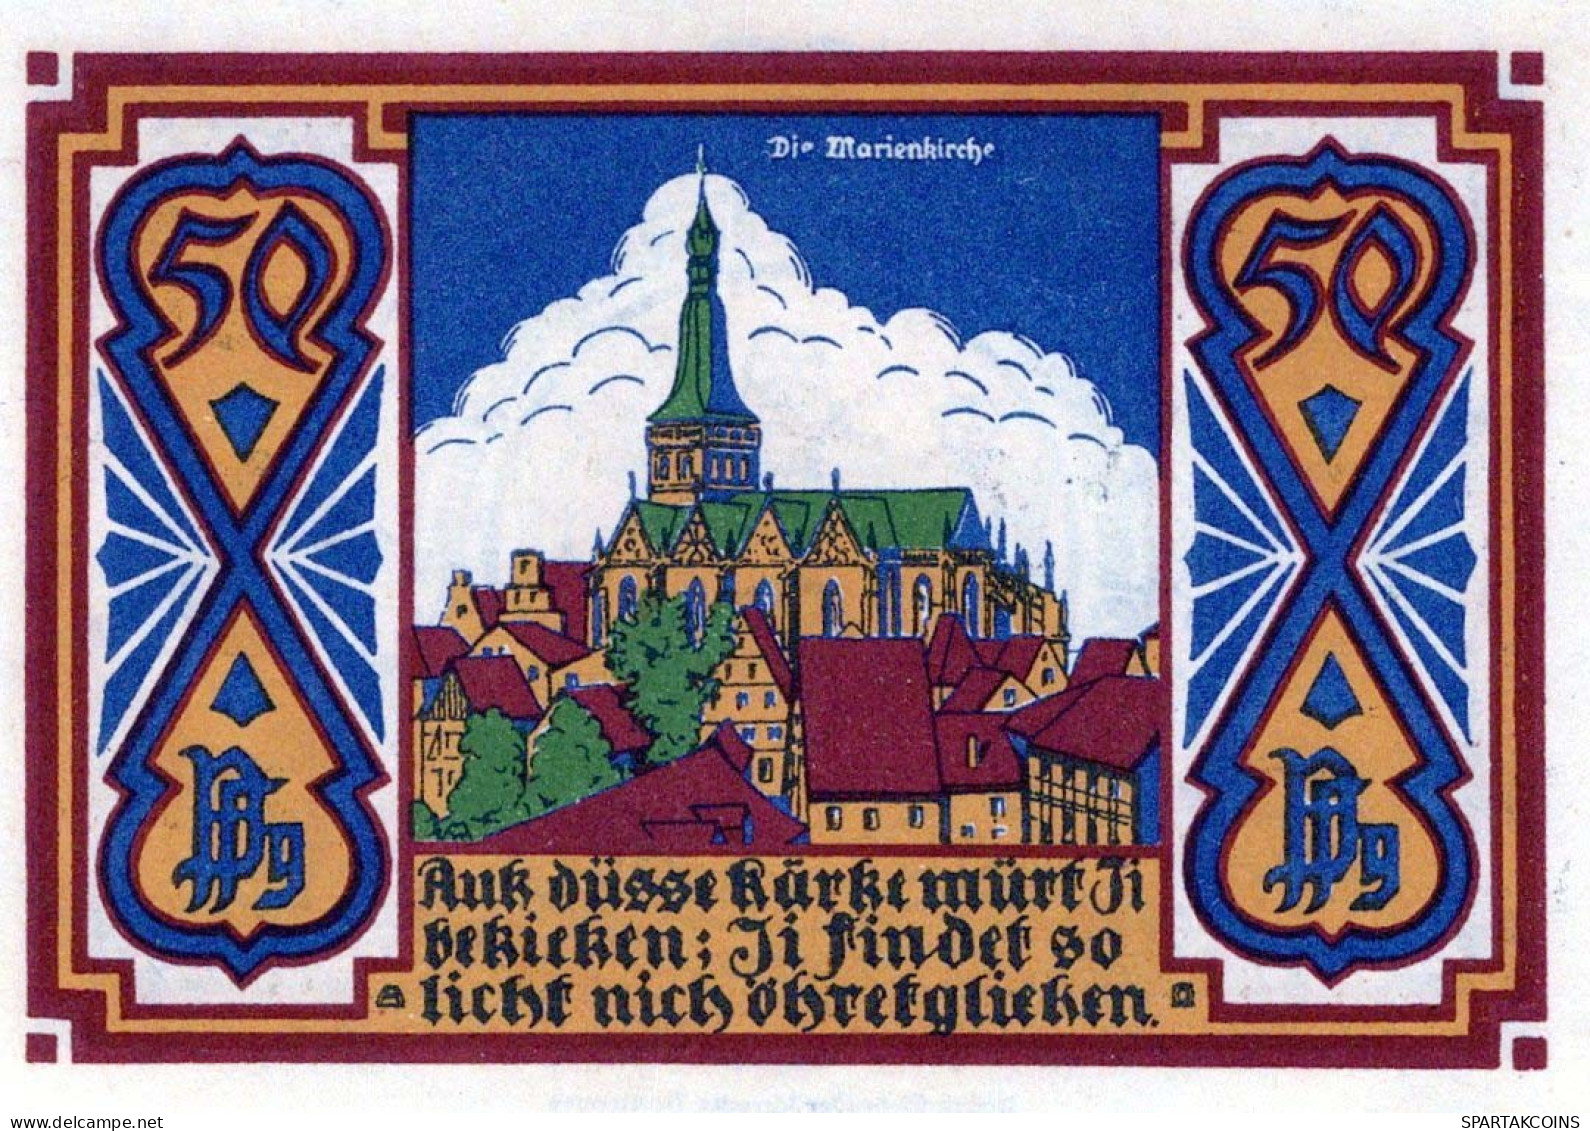 50 PFENNIG 1921-1922 Stadt OSNABRÜCK Hanover UNC DEUTSCHLAND Notgeld #PC290 - [11] Emisiones Locales